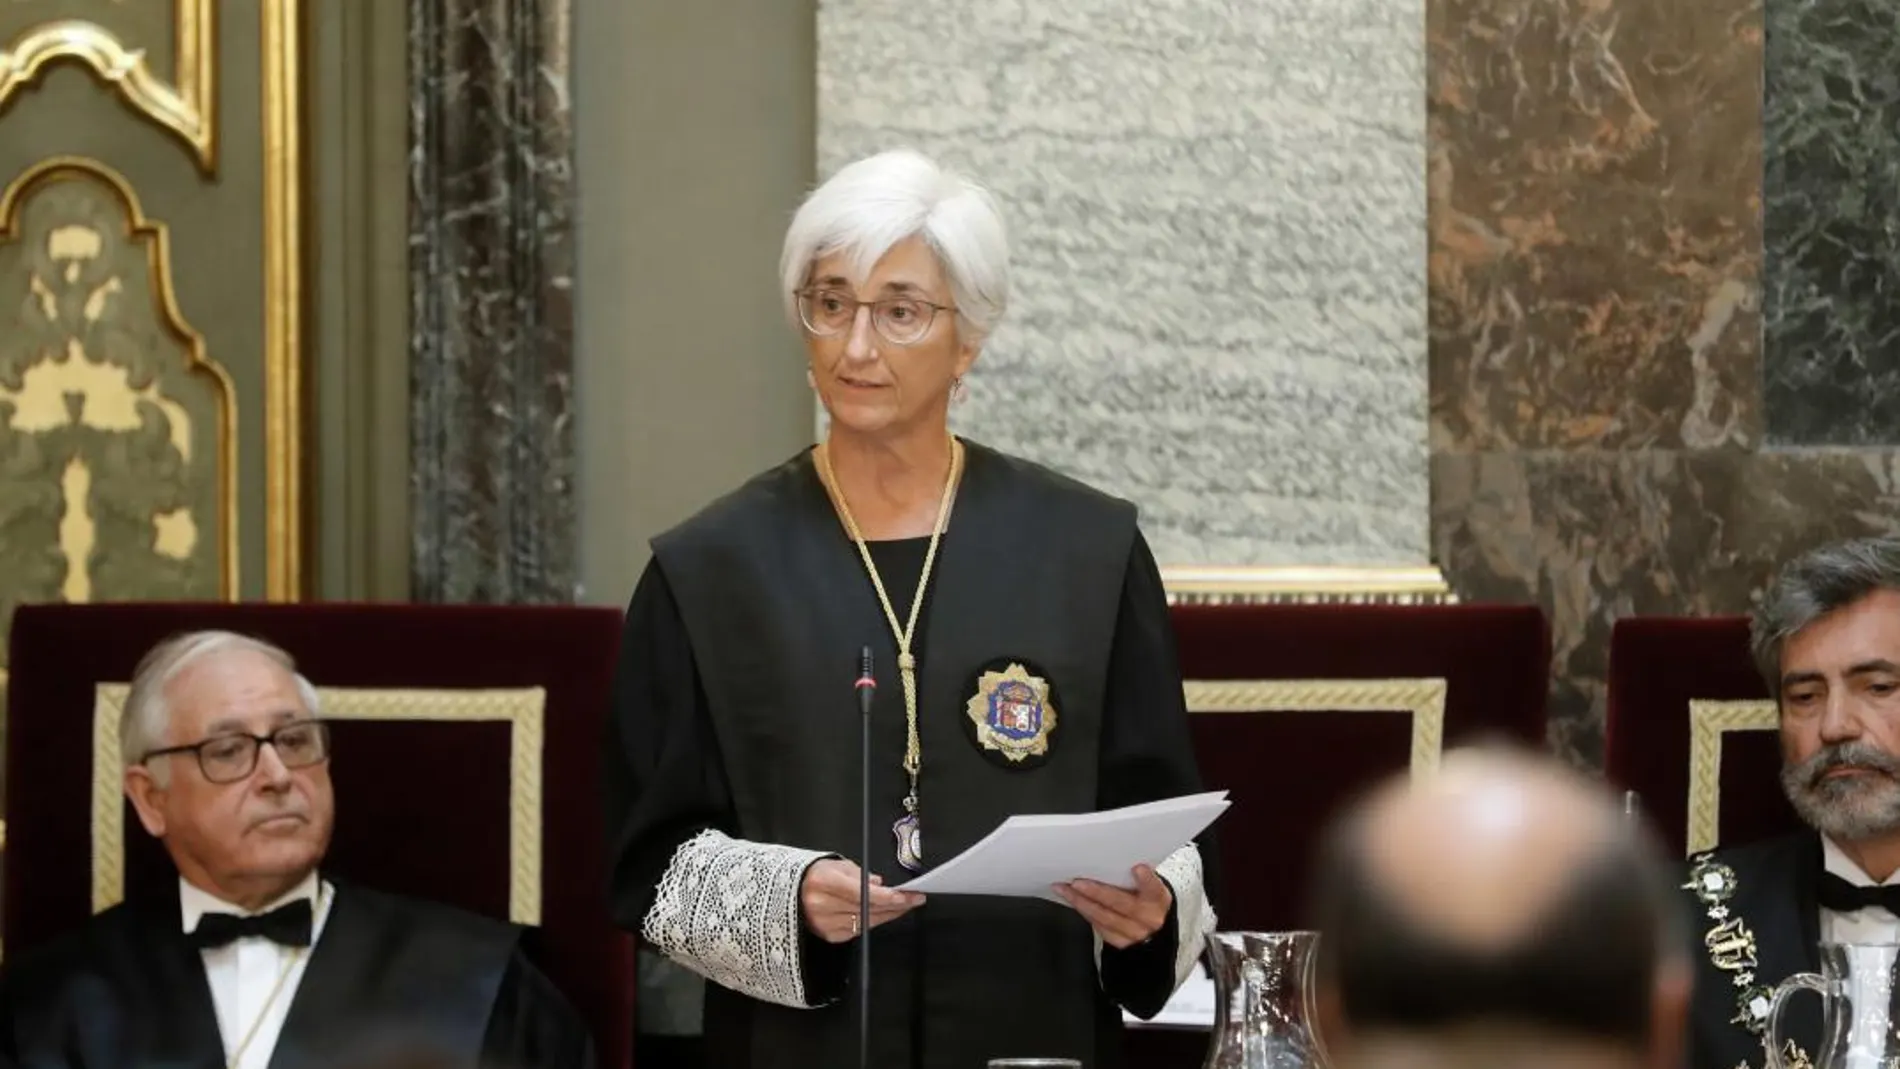 La fiscal general del Estado, María José Segarra, durante su discurso en la ceremonia de apertura del Año Judicial, que tiene lugar hoy en la sede del Tribunal Supremo / Efe